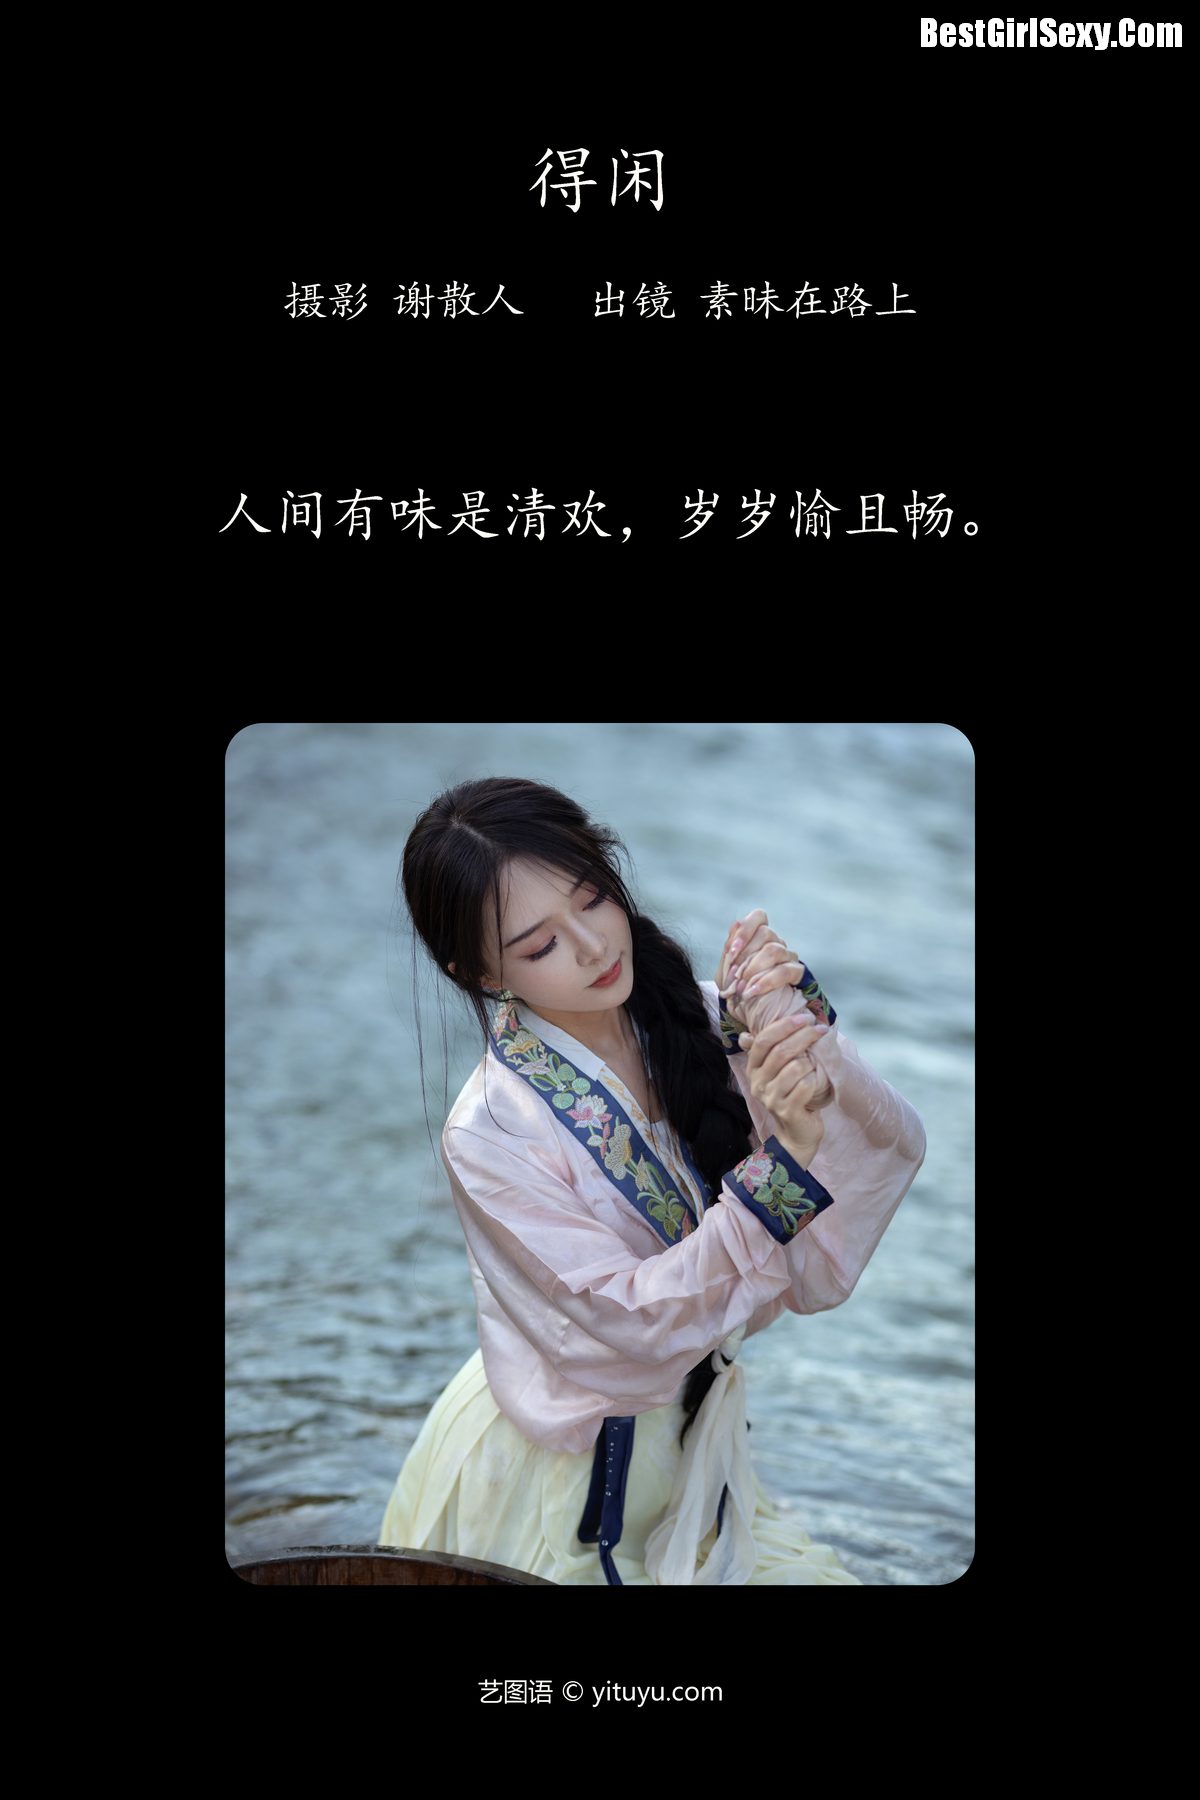 YiTuYu艺图语 Vol 4050 Su Mei Zai Lu Shang 0002 4066830388.jpg